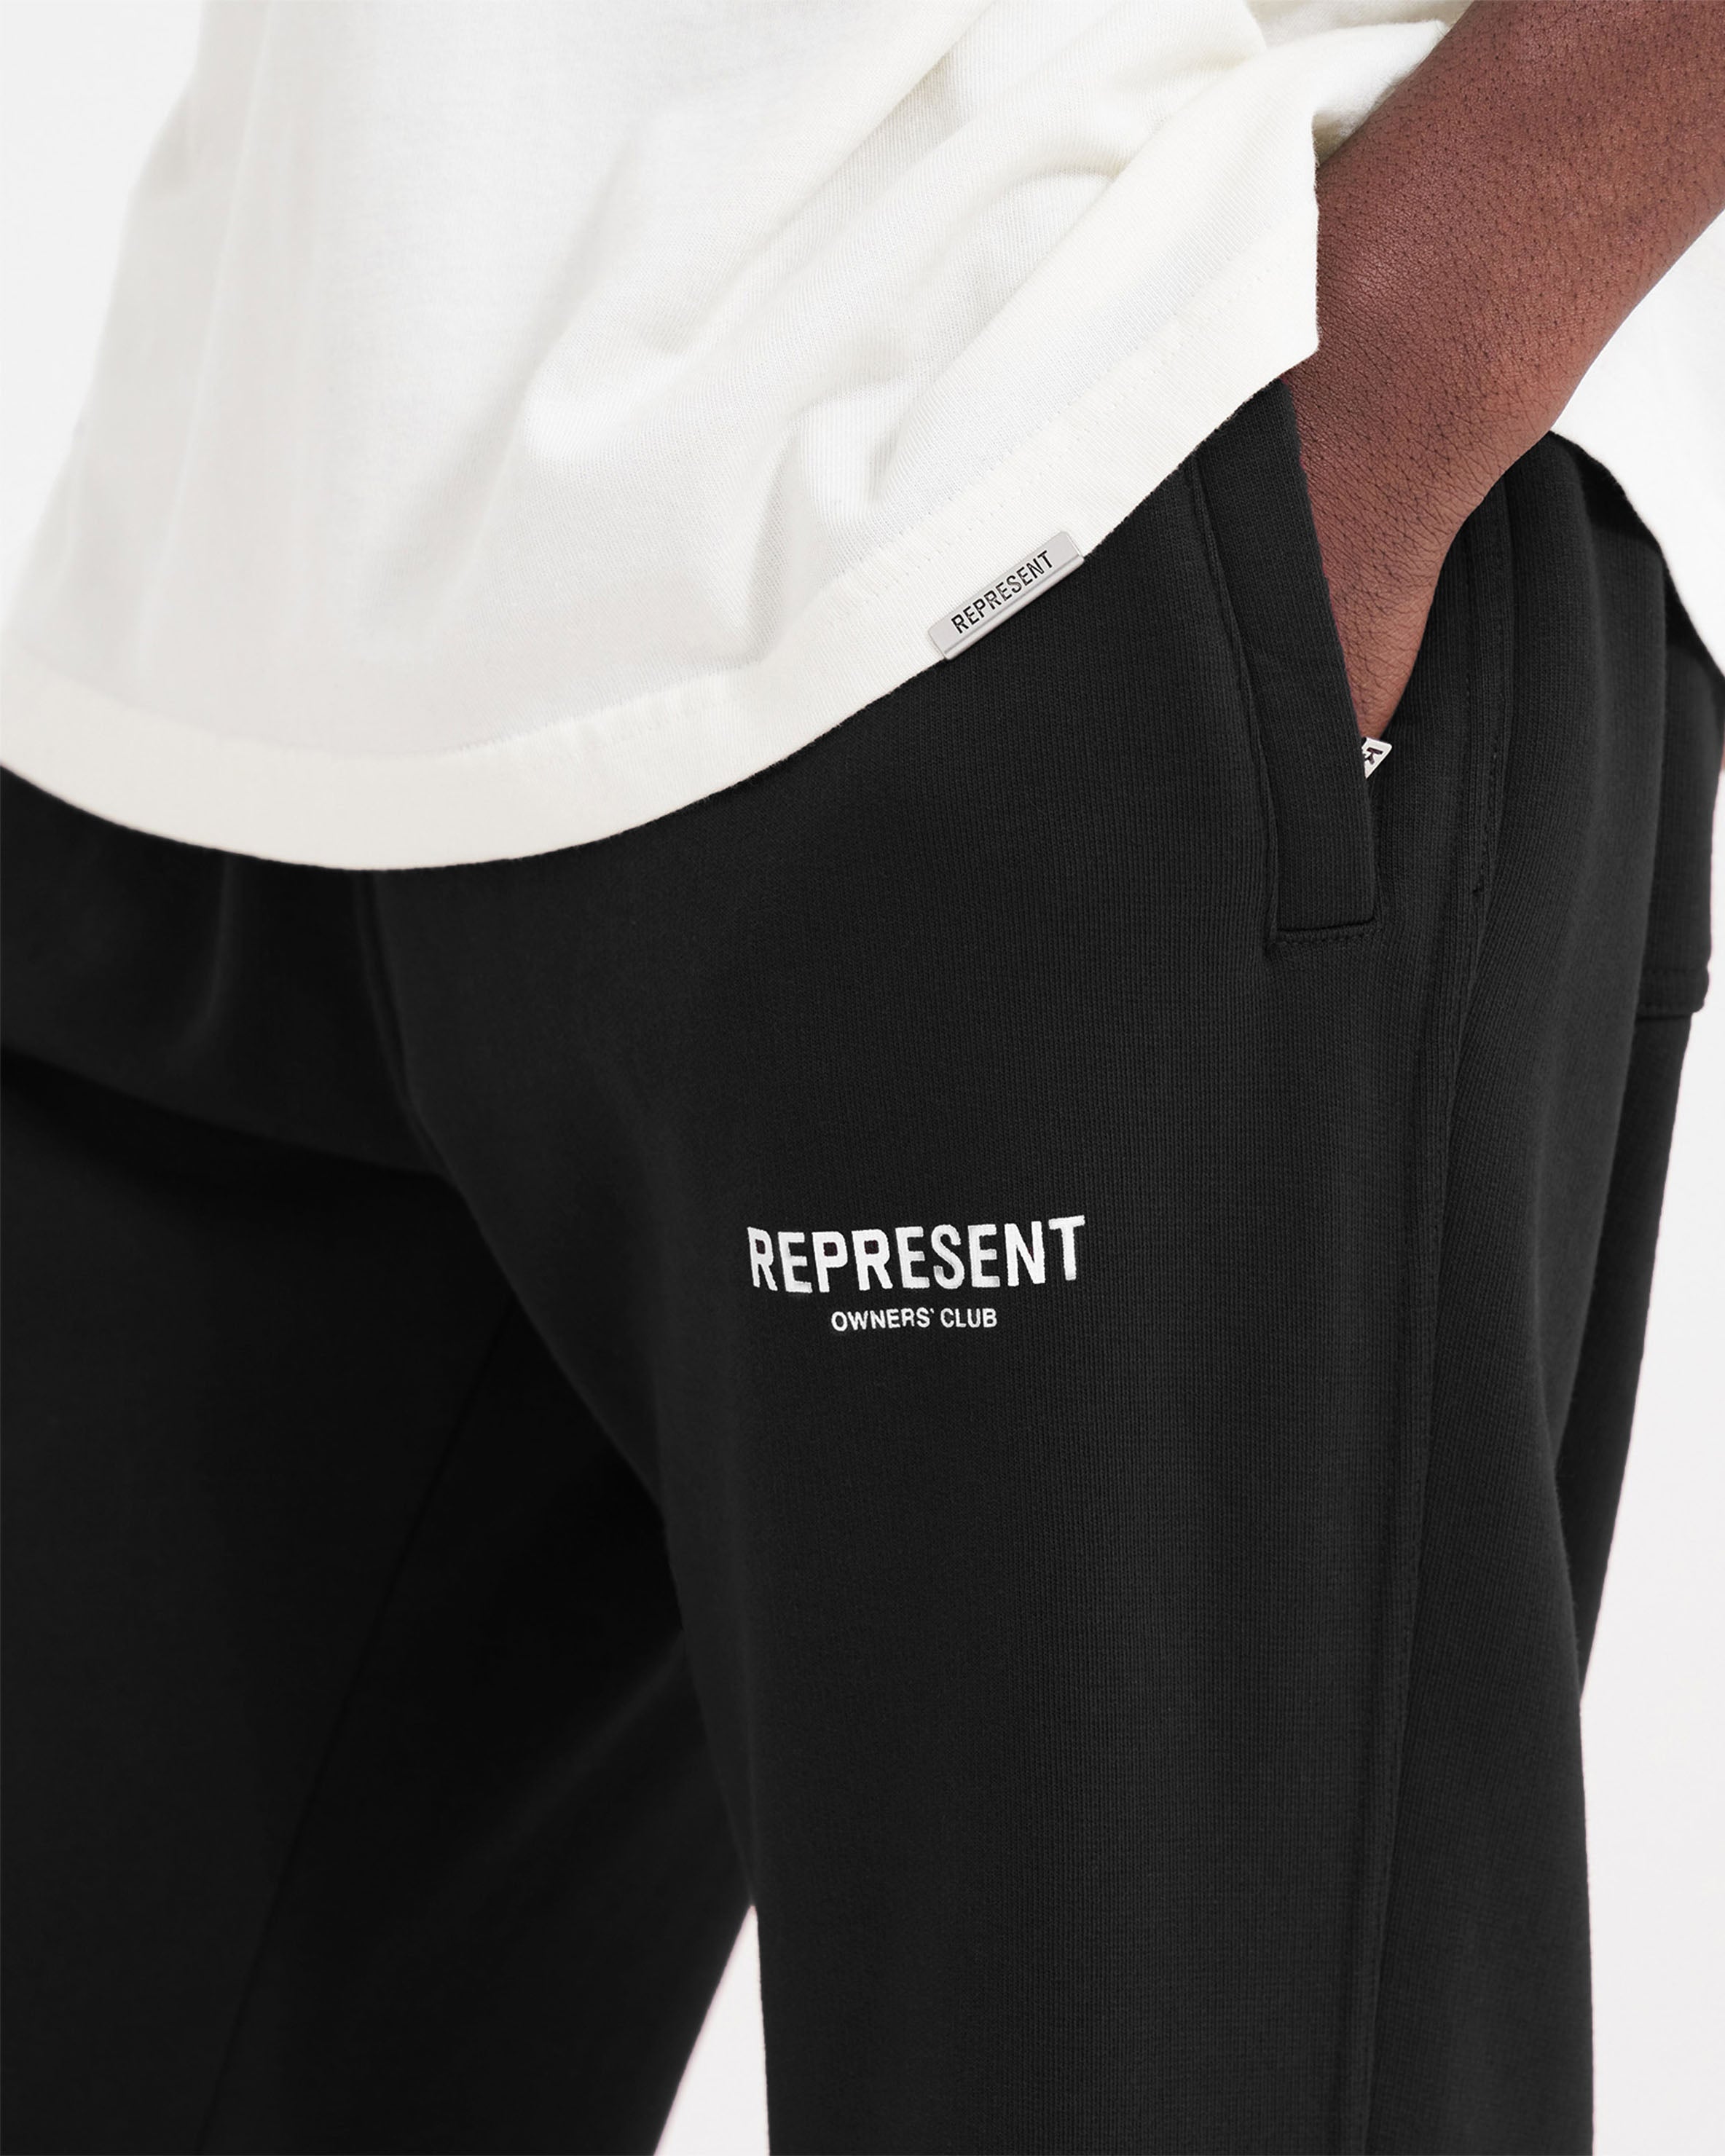 Represent Owners Club Sweatpant - Black